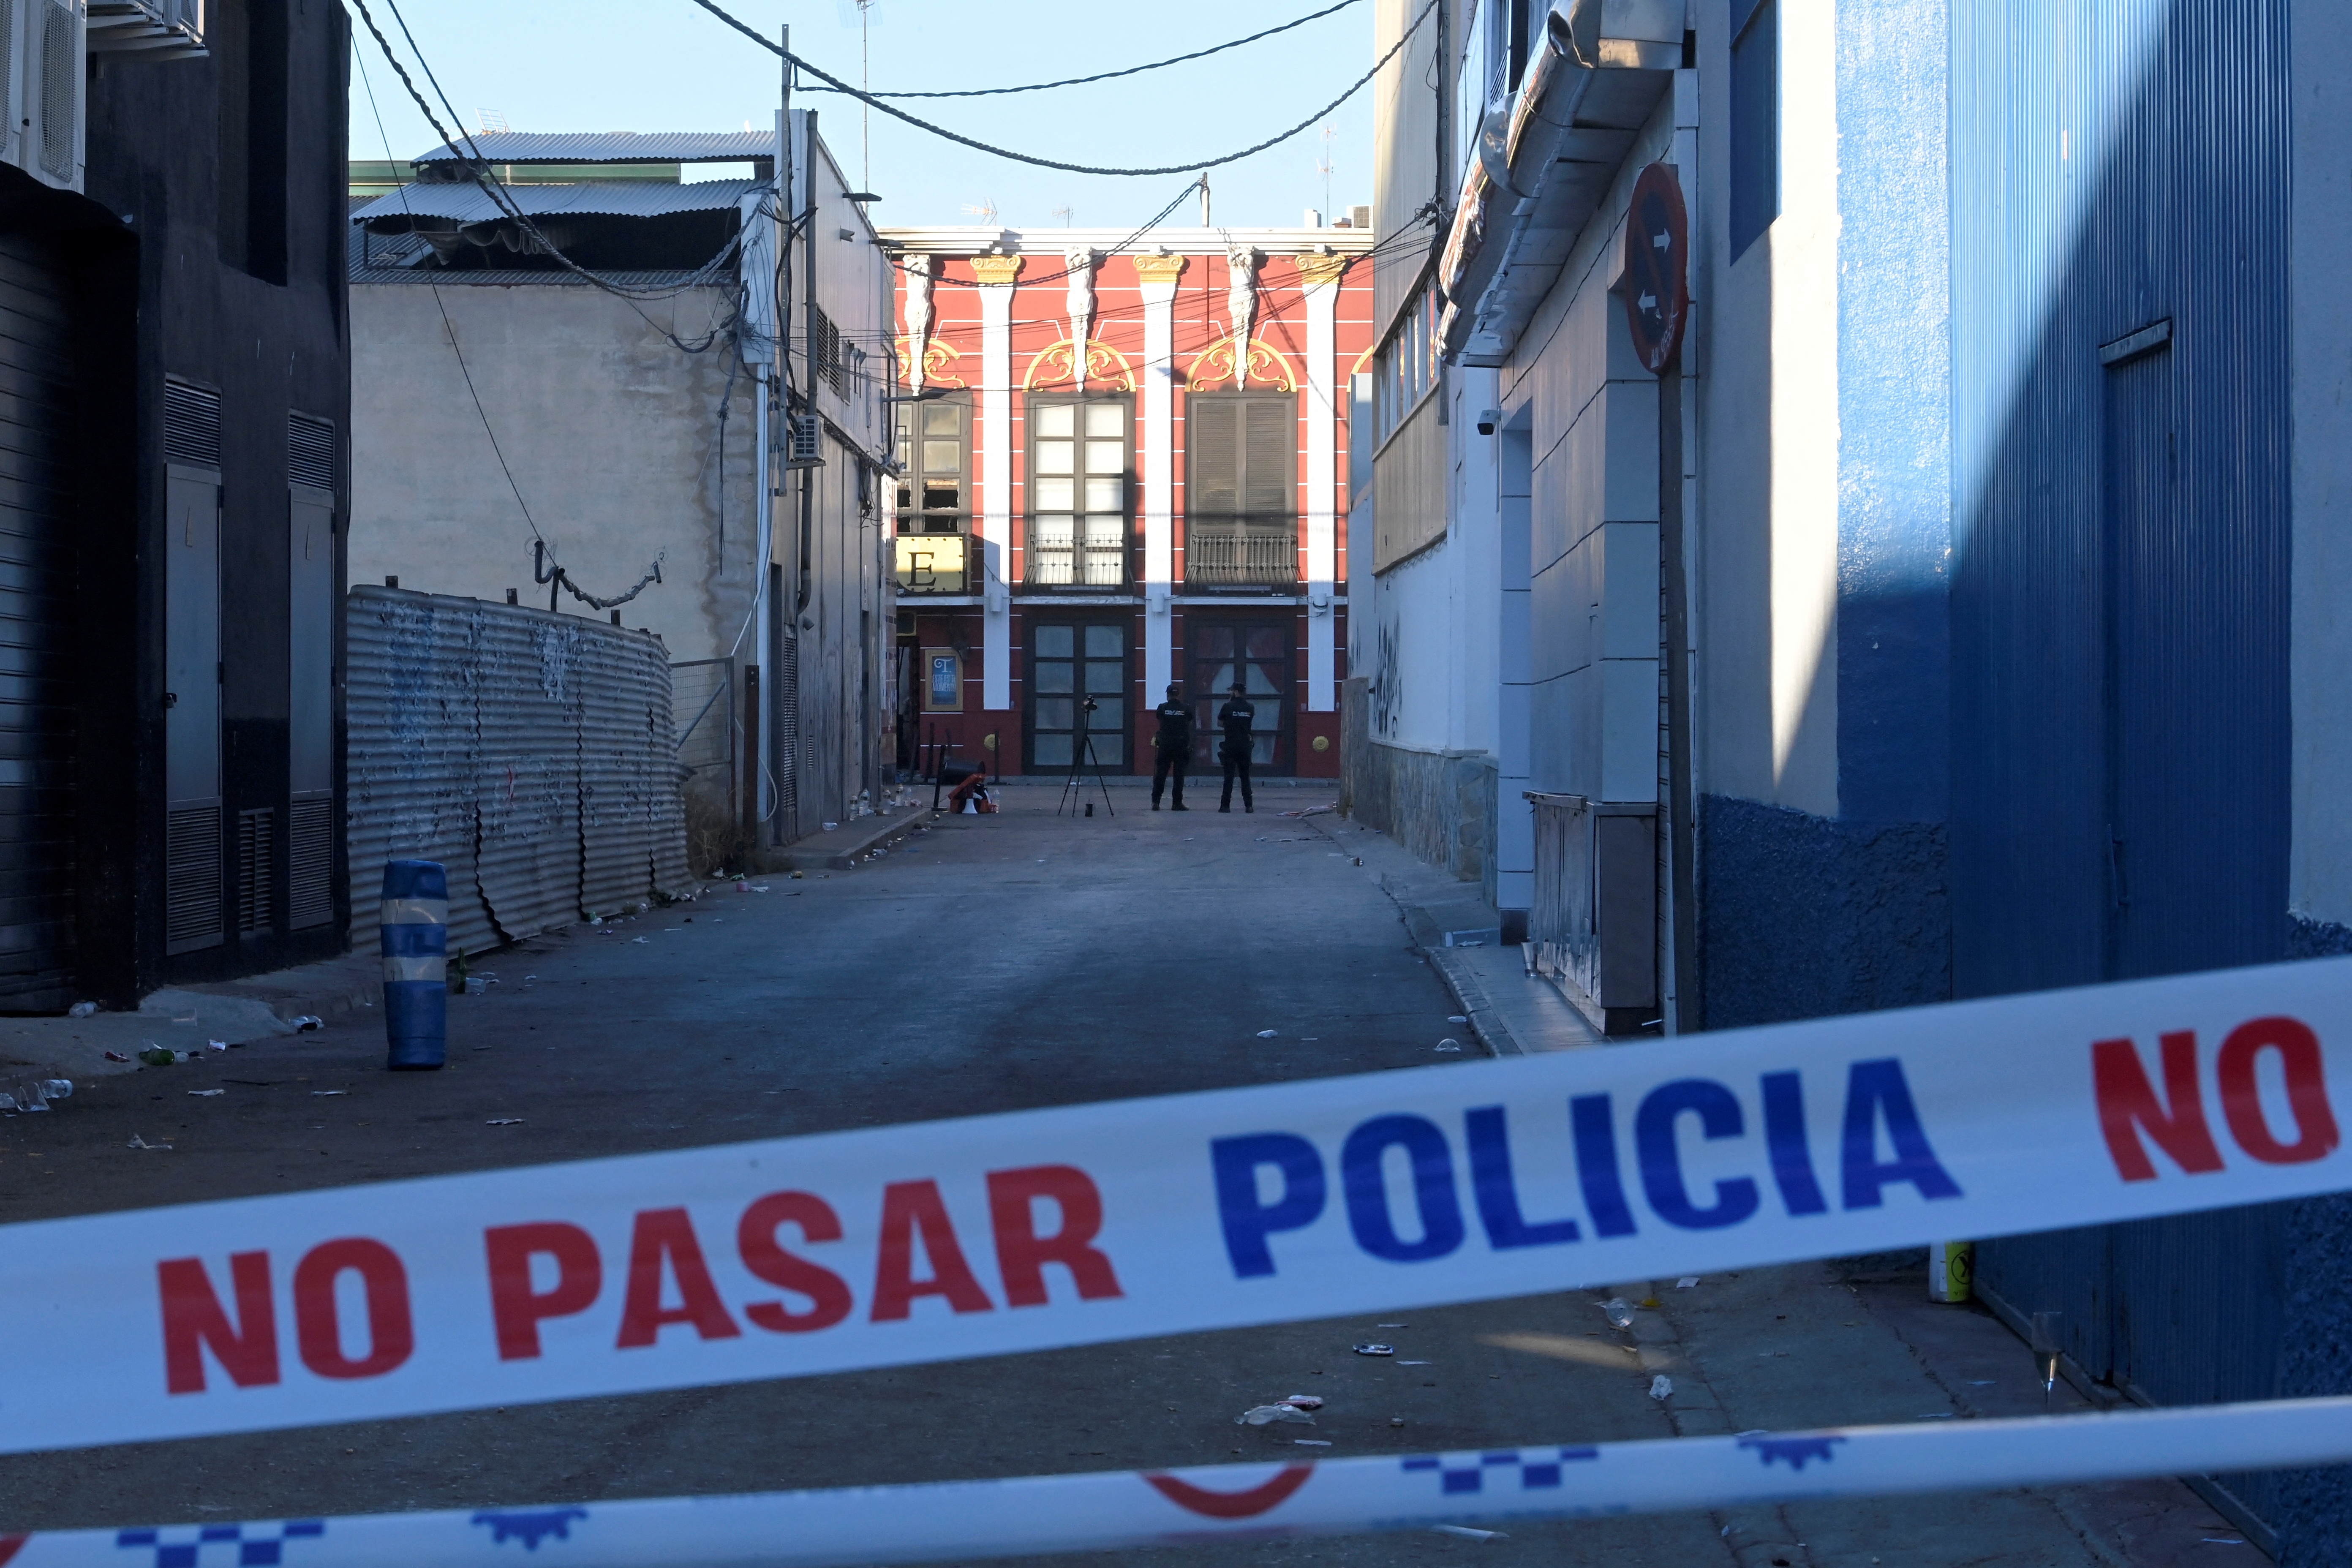 Bomberos revisan escombros tras incendio que dejó 13 muertos en discoteca española